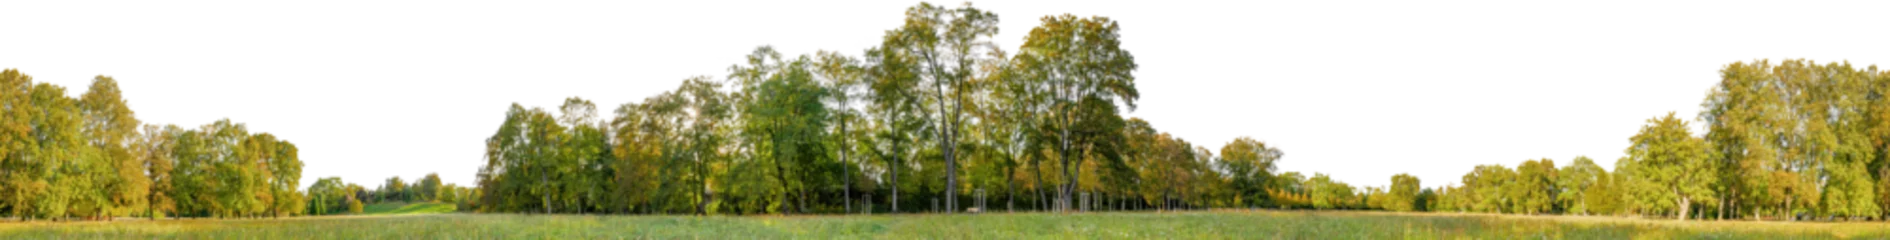 Foto auf Leinwand tree line trees autumn xl horizontal seamless arch viz cutout © Mathias Weil